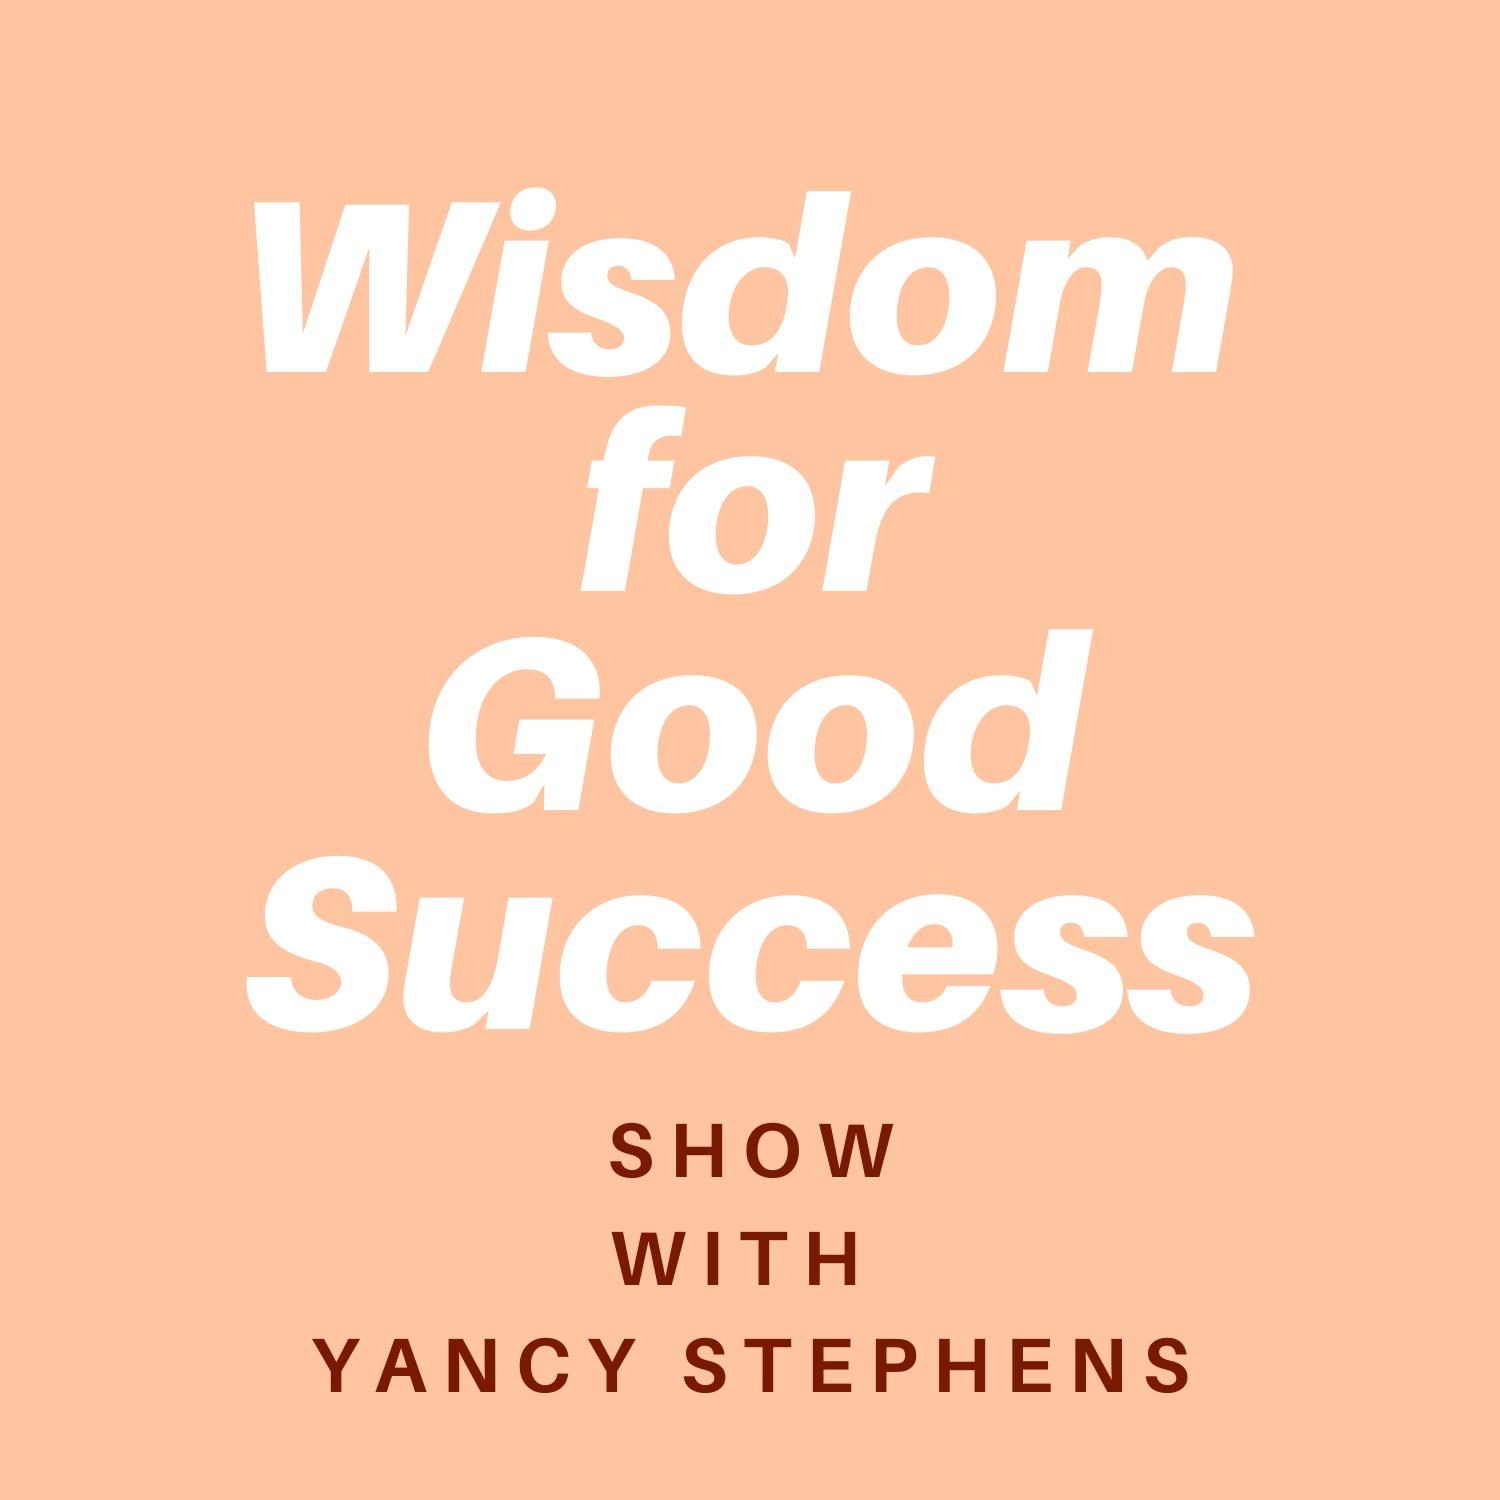 Wisdom for Good Success